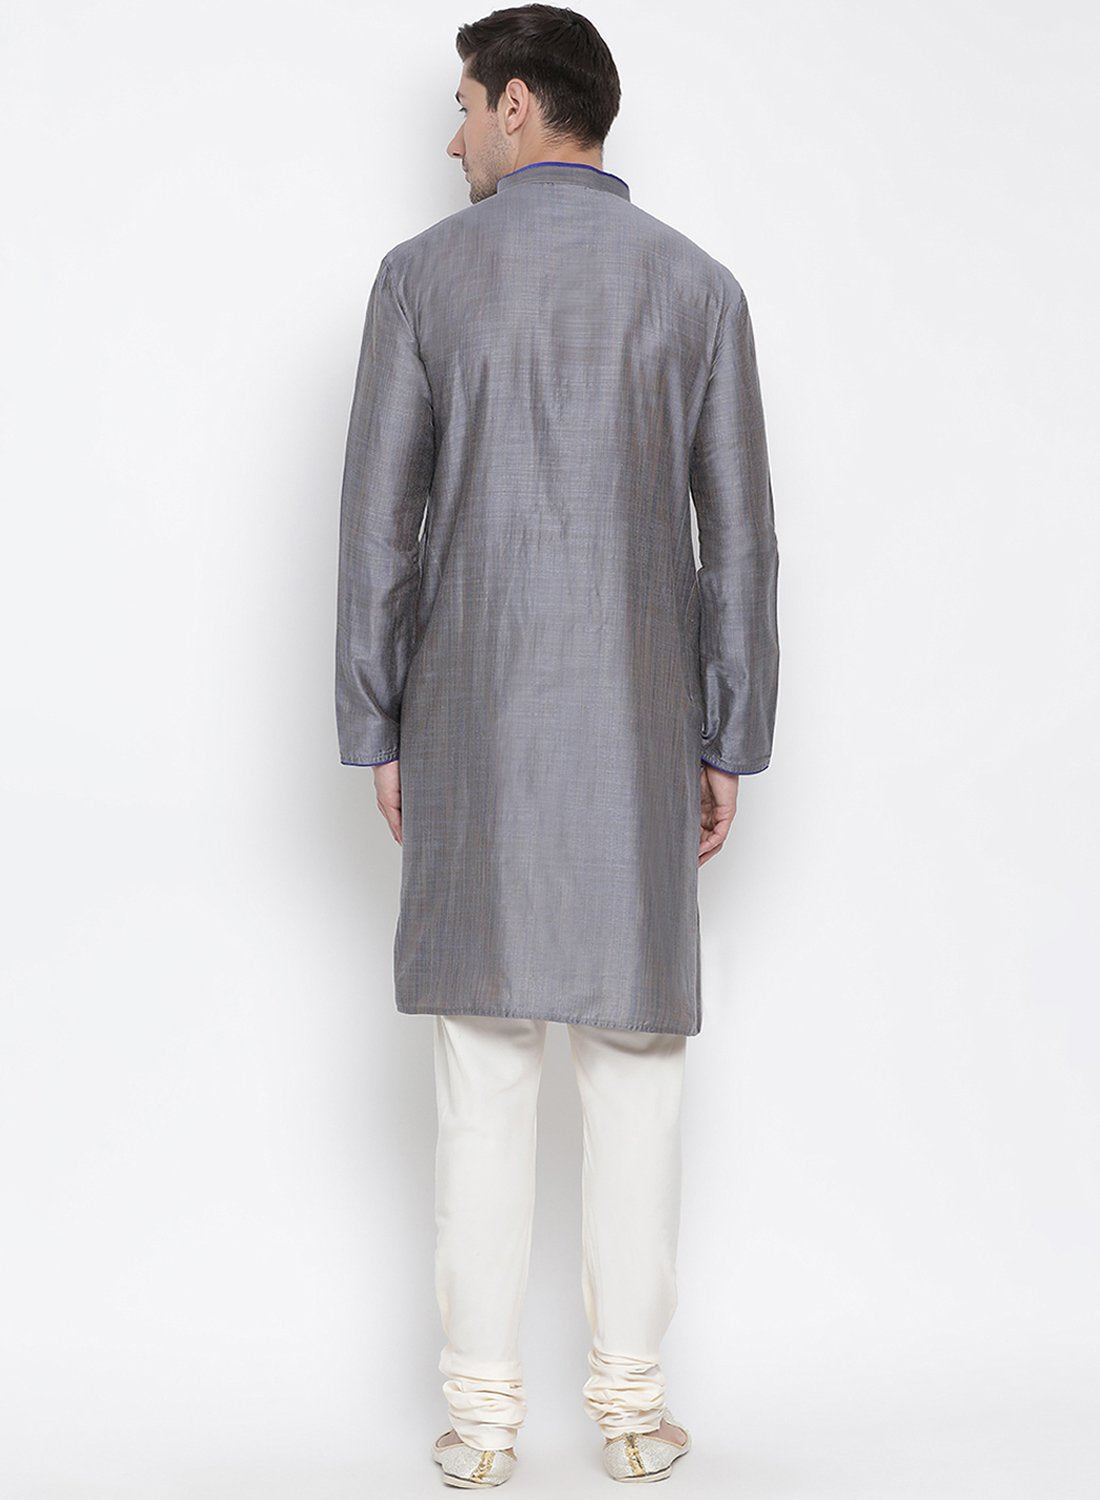 Men's Grey Cotton Kurta and Pyjama Set